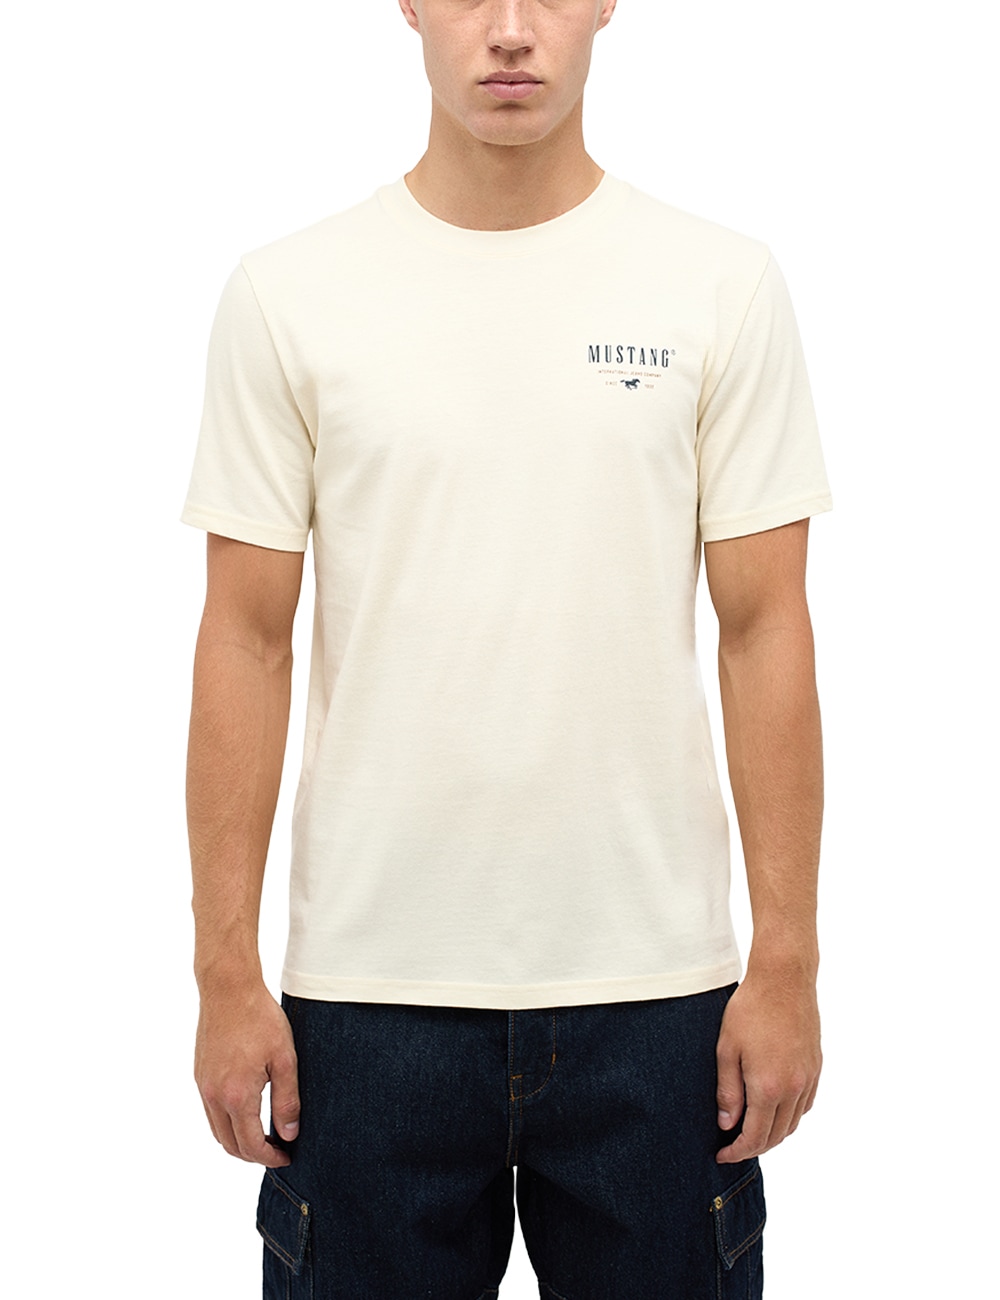 MUSTANG Kurzarmshirt »Mustang T-Shirt T-Shirt« online bestellen bei OTTO | T-Shirts